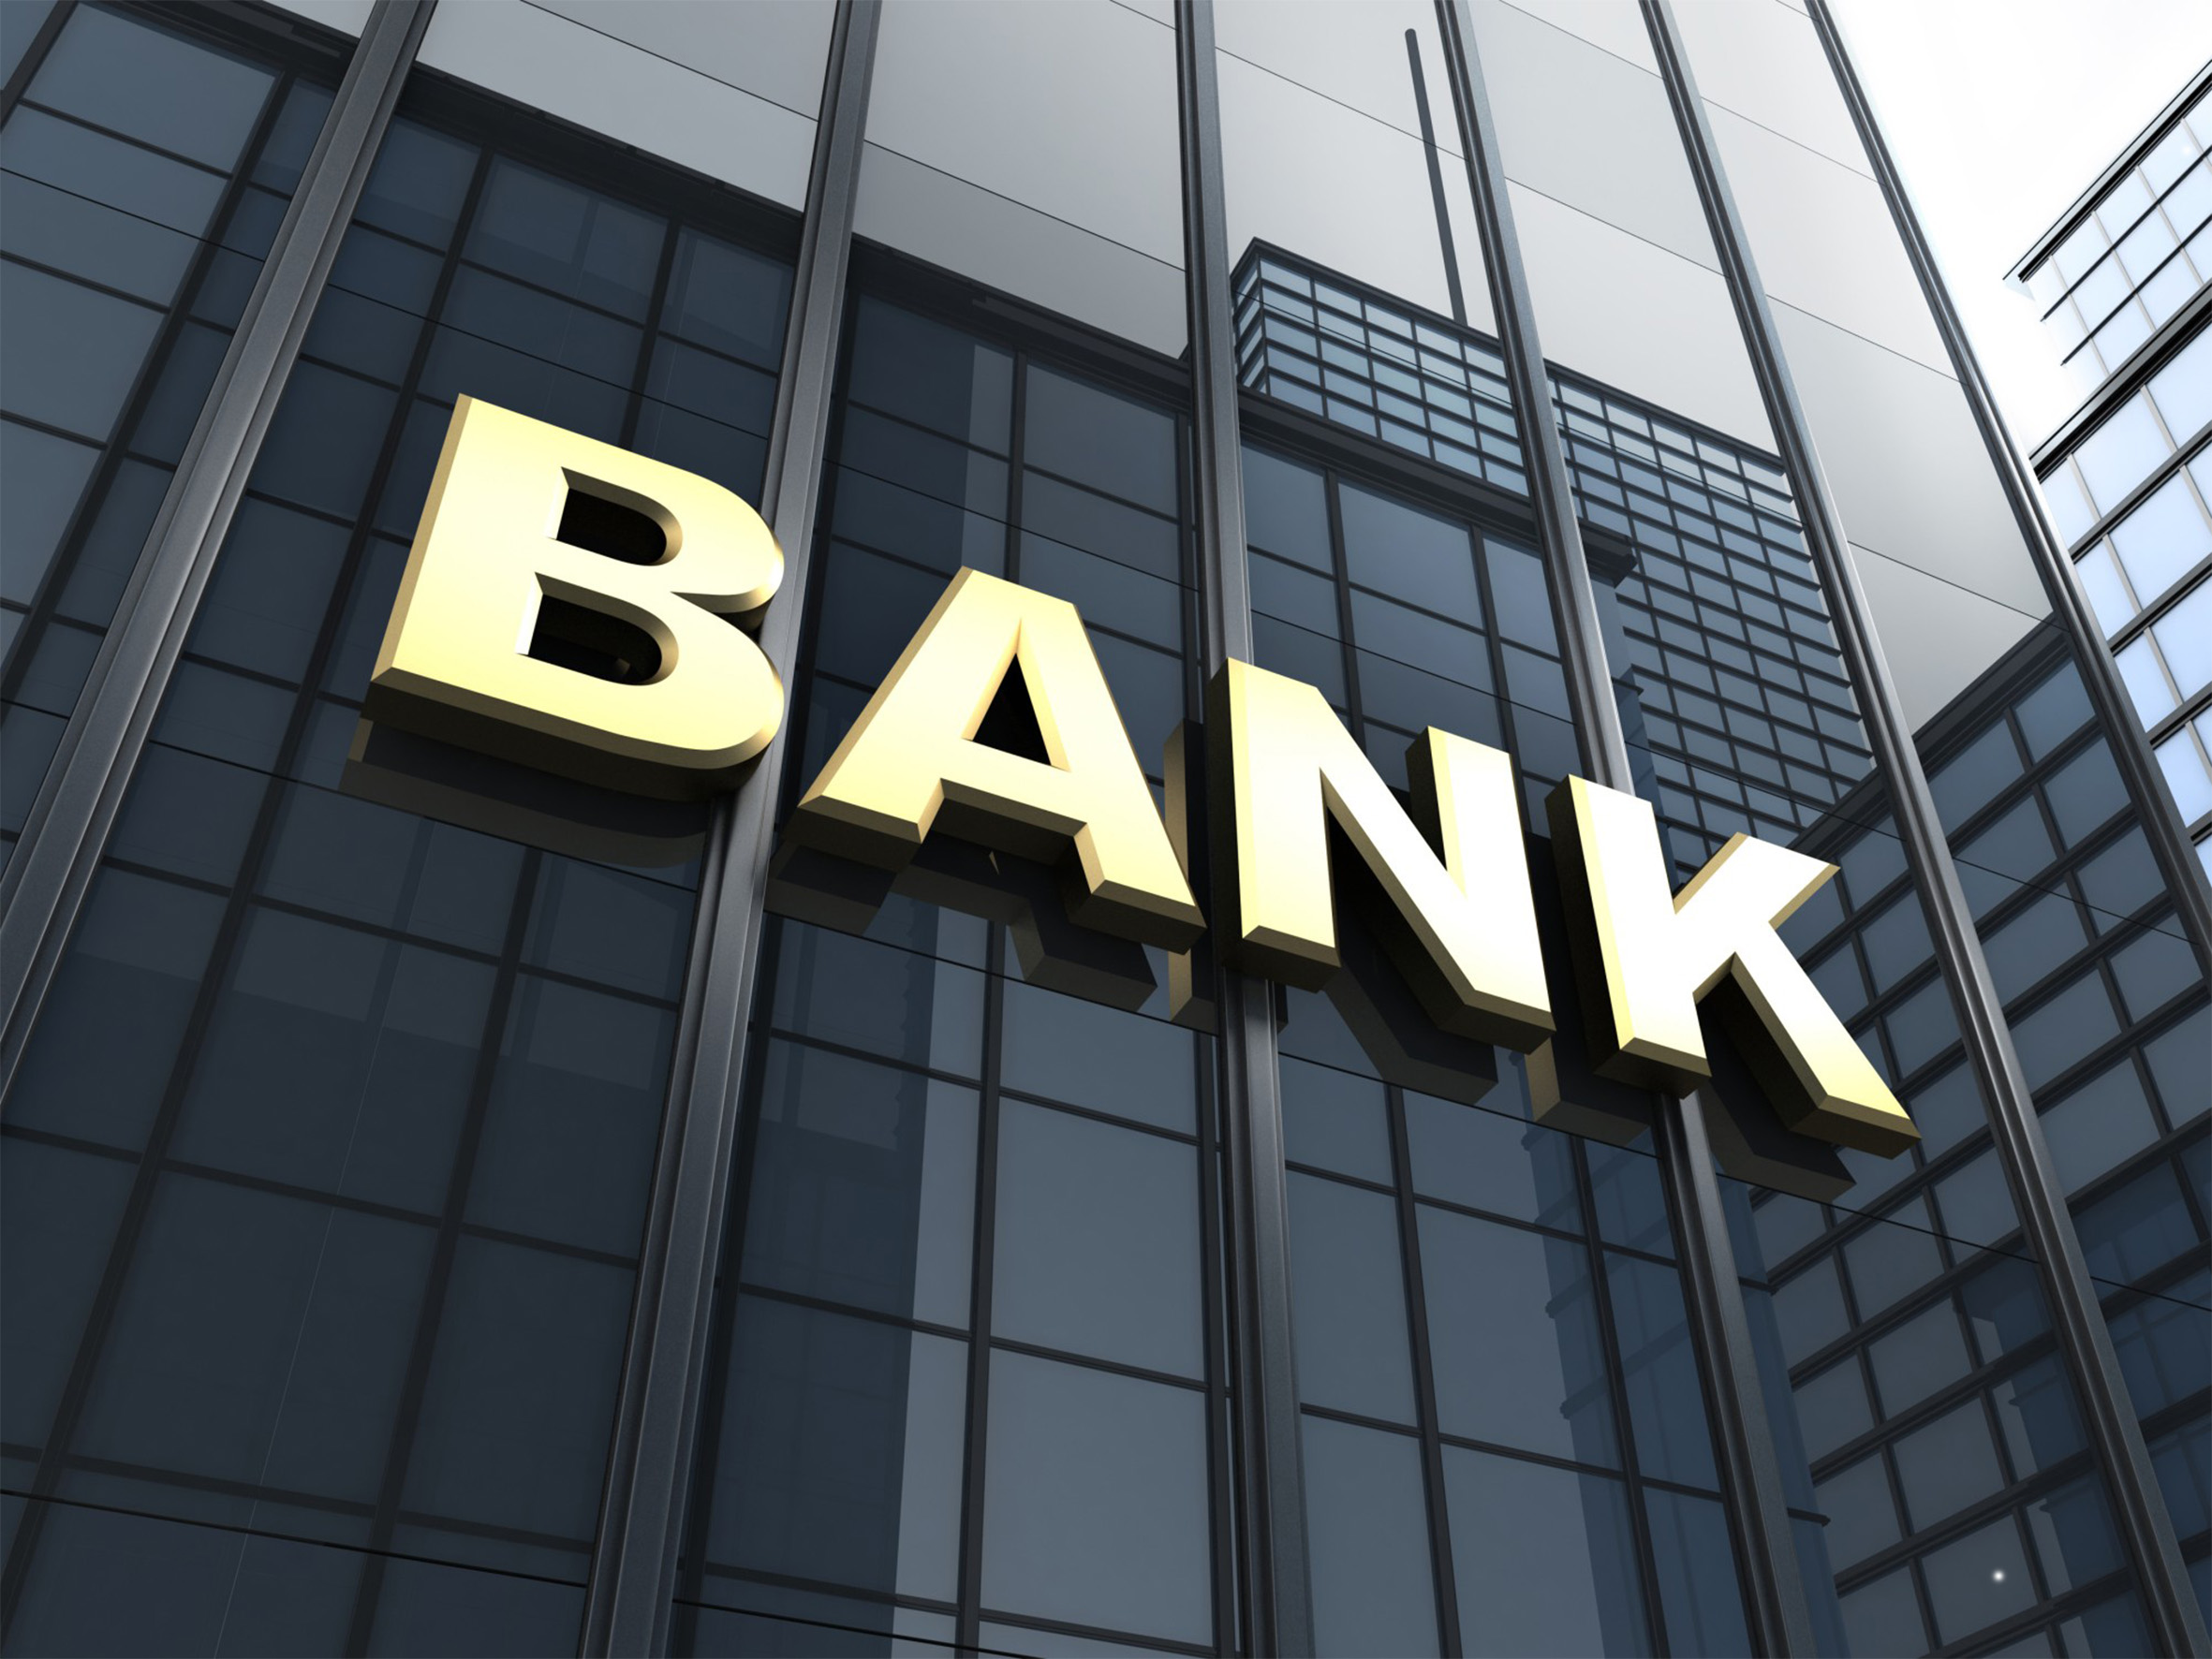  Инвестиционная банковская деятельность простыми словами